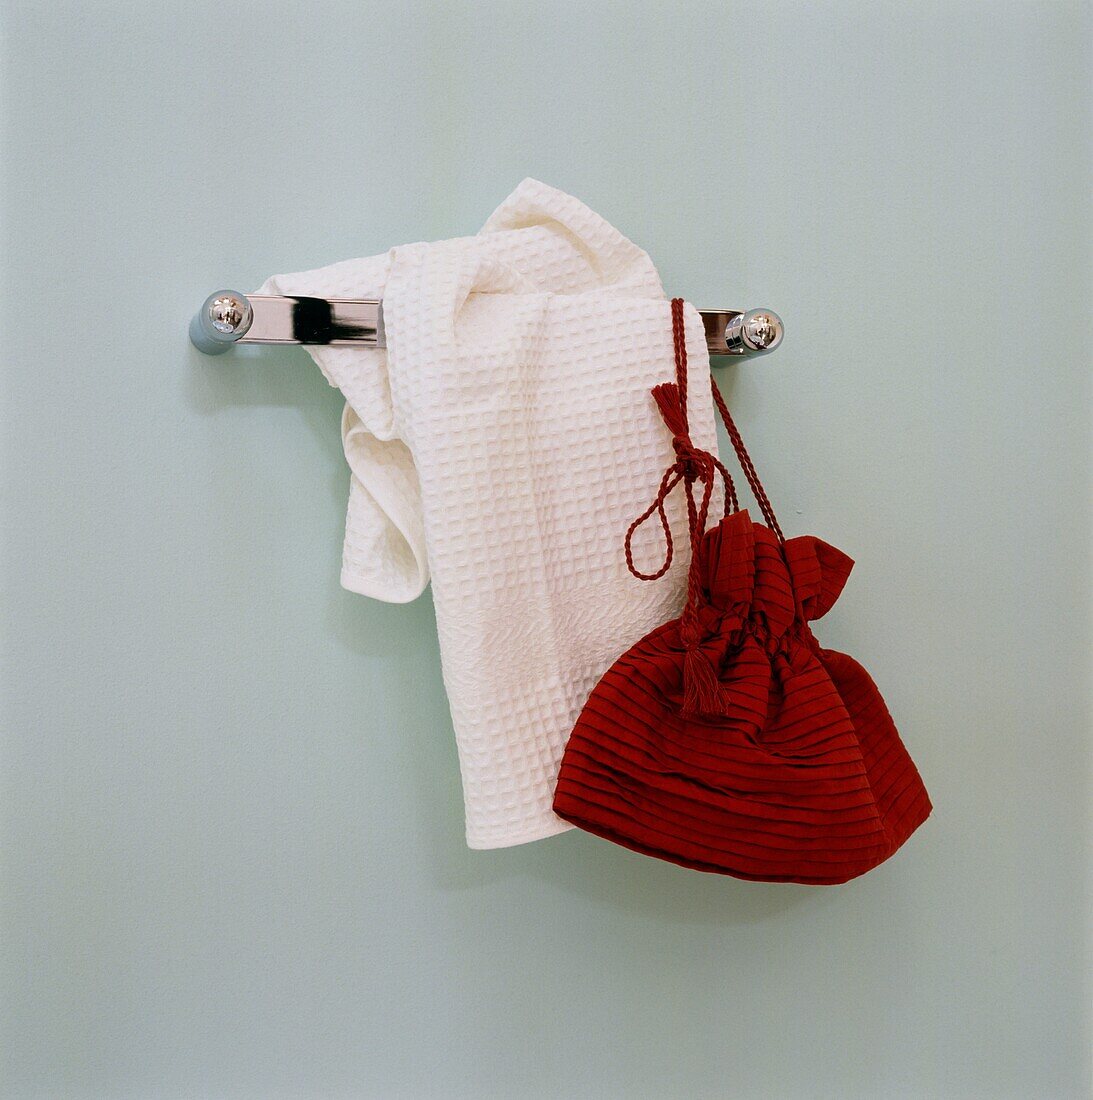 Rote Tasche und weißes Handtuch hängen an der Badezimmerwand